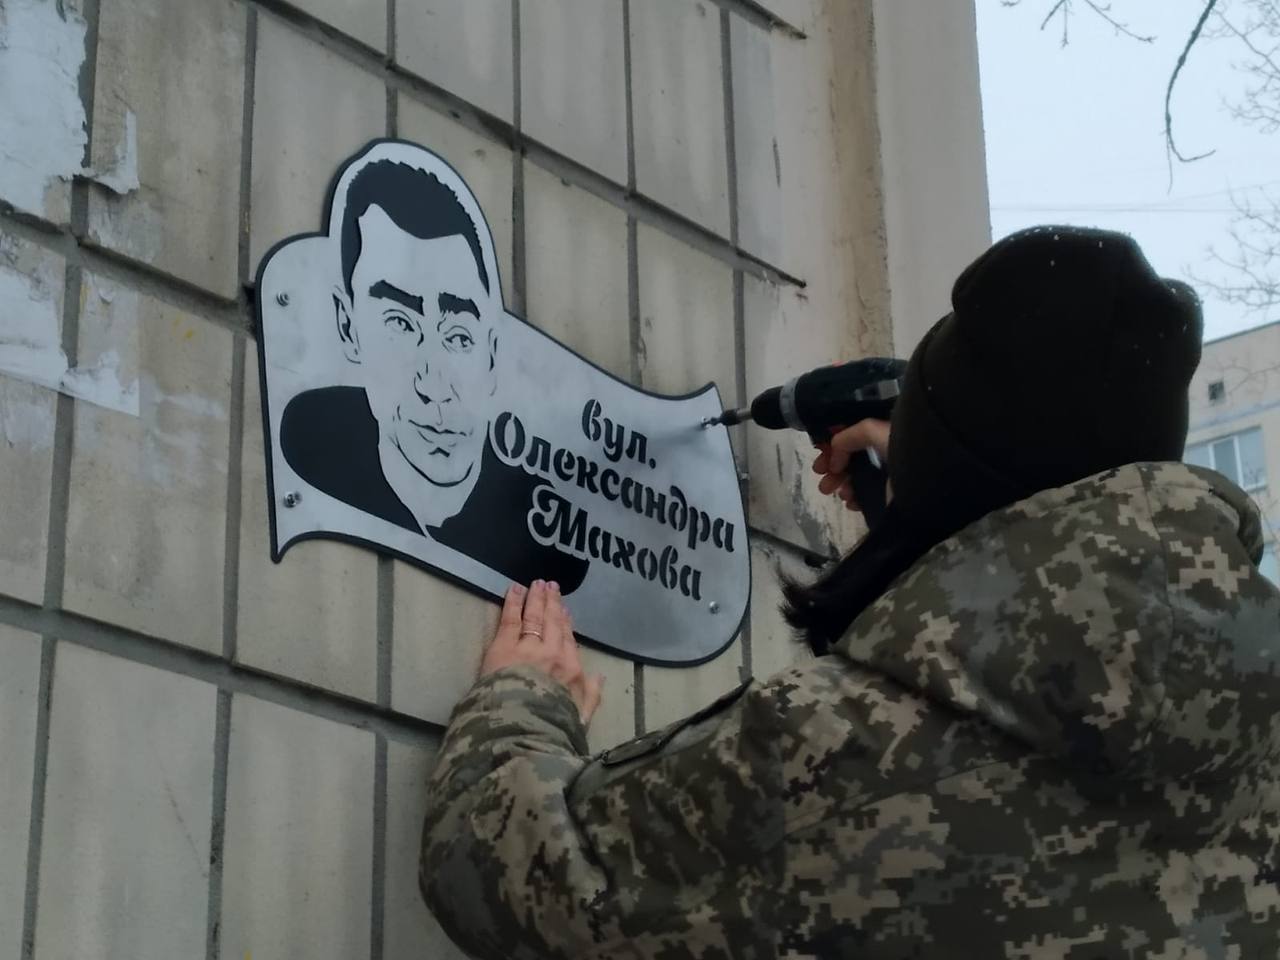 Anastasiya Blyshchyk installs a sign in honor of fiancé Oleksandr Makhov on Makhov Street in Kyiv in November 2022. Photo provided by Blyshchyk.